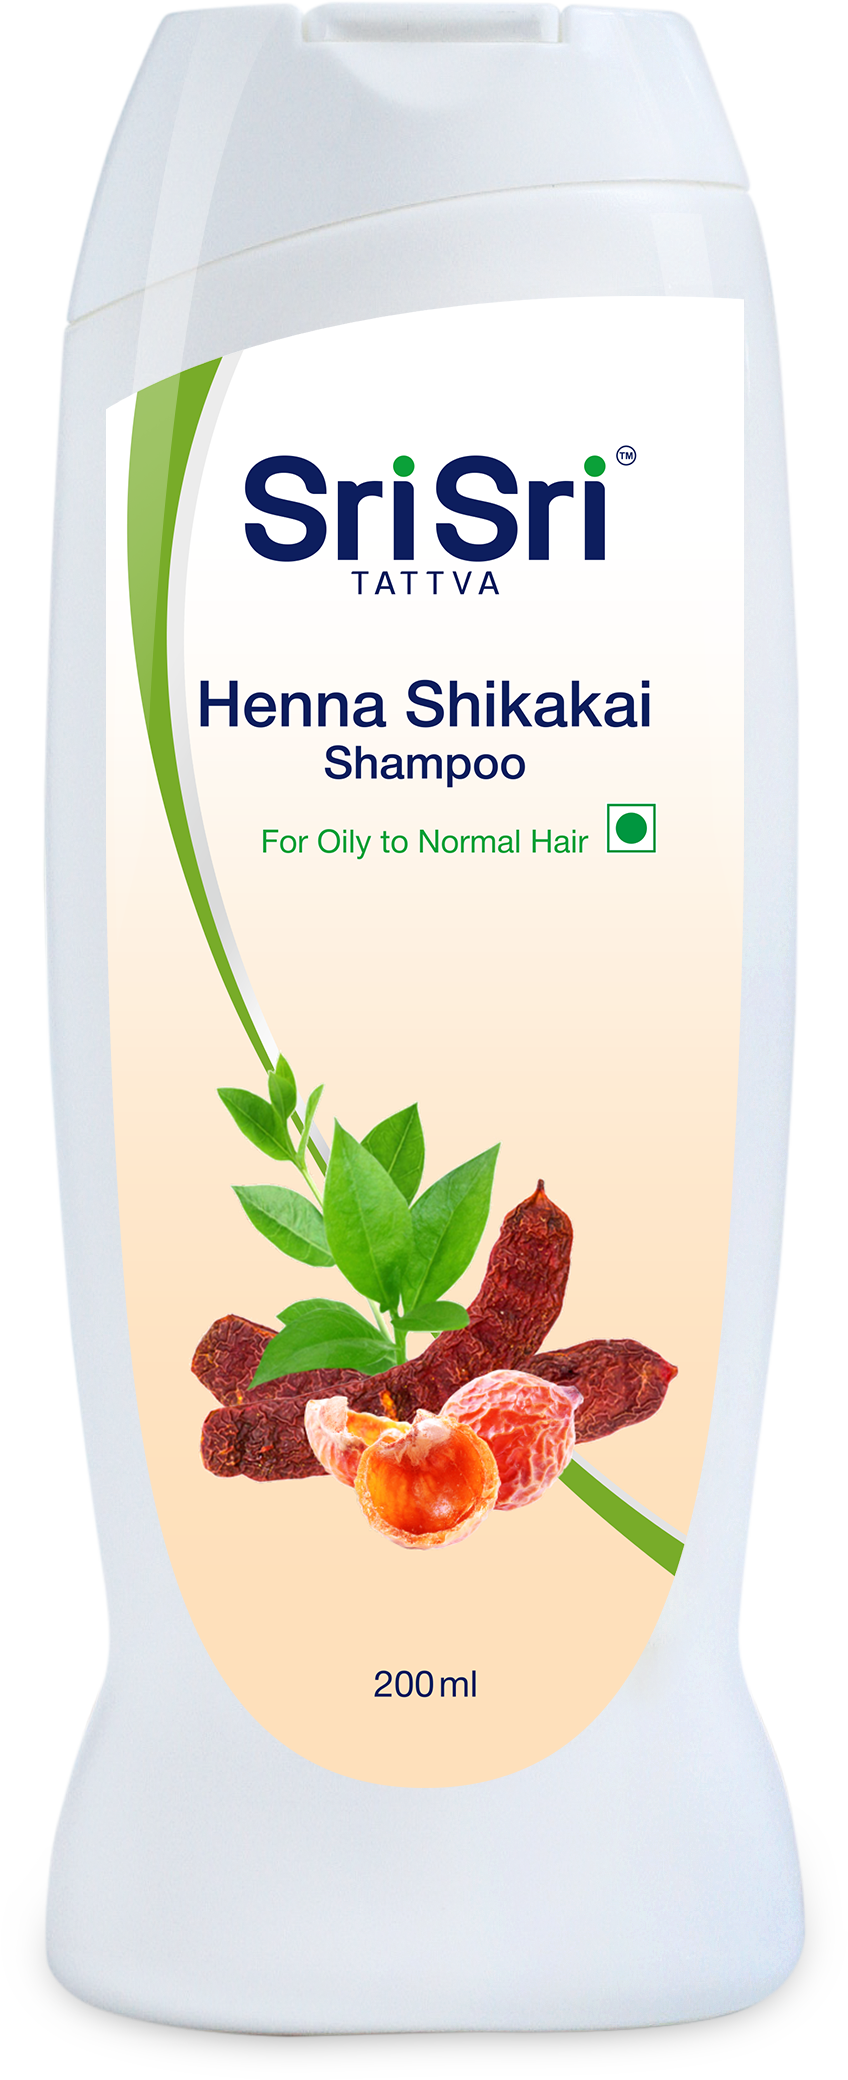 Buy Sri Sri Tattva Henna Shikakai Shampoo at Best Price Online